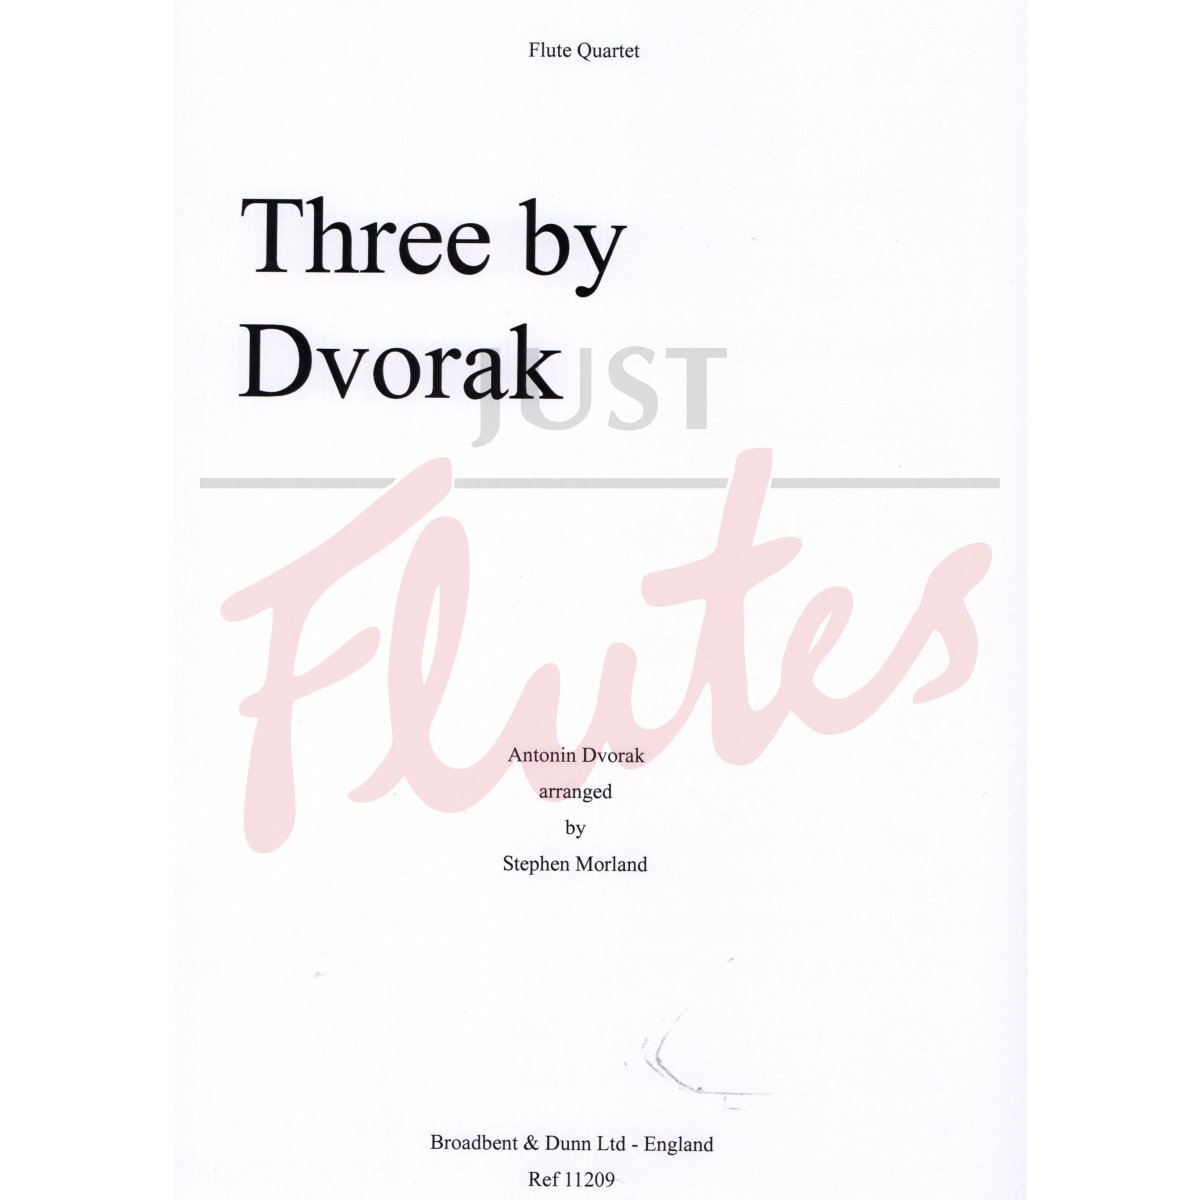 Three by Dvorak for Flute Quartet